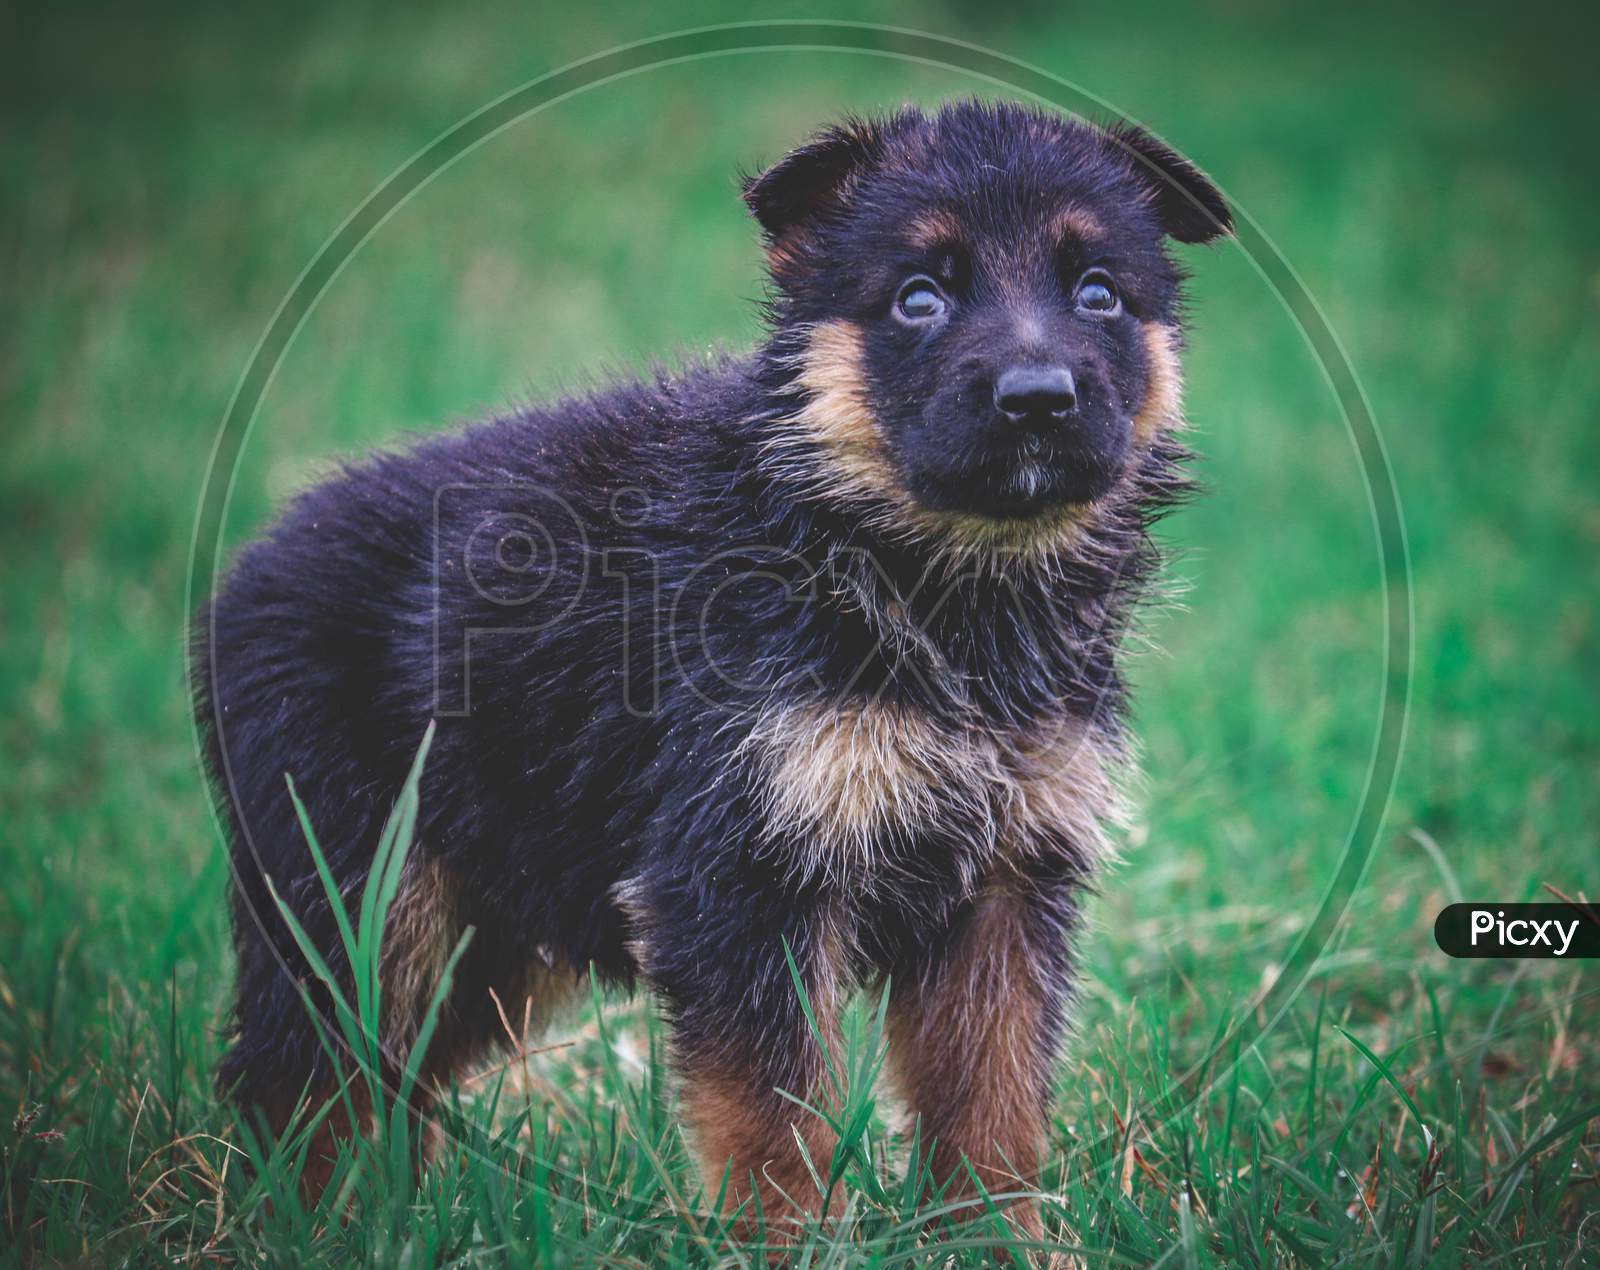 Little German shepherd puppy